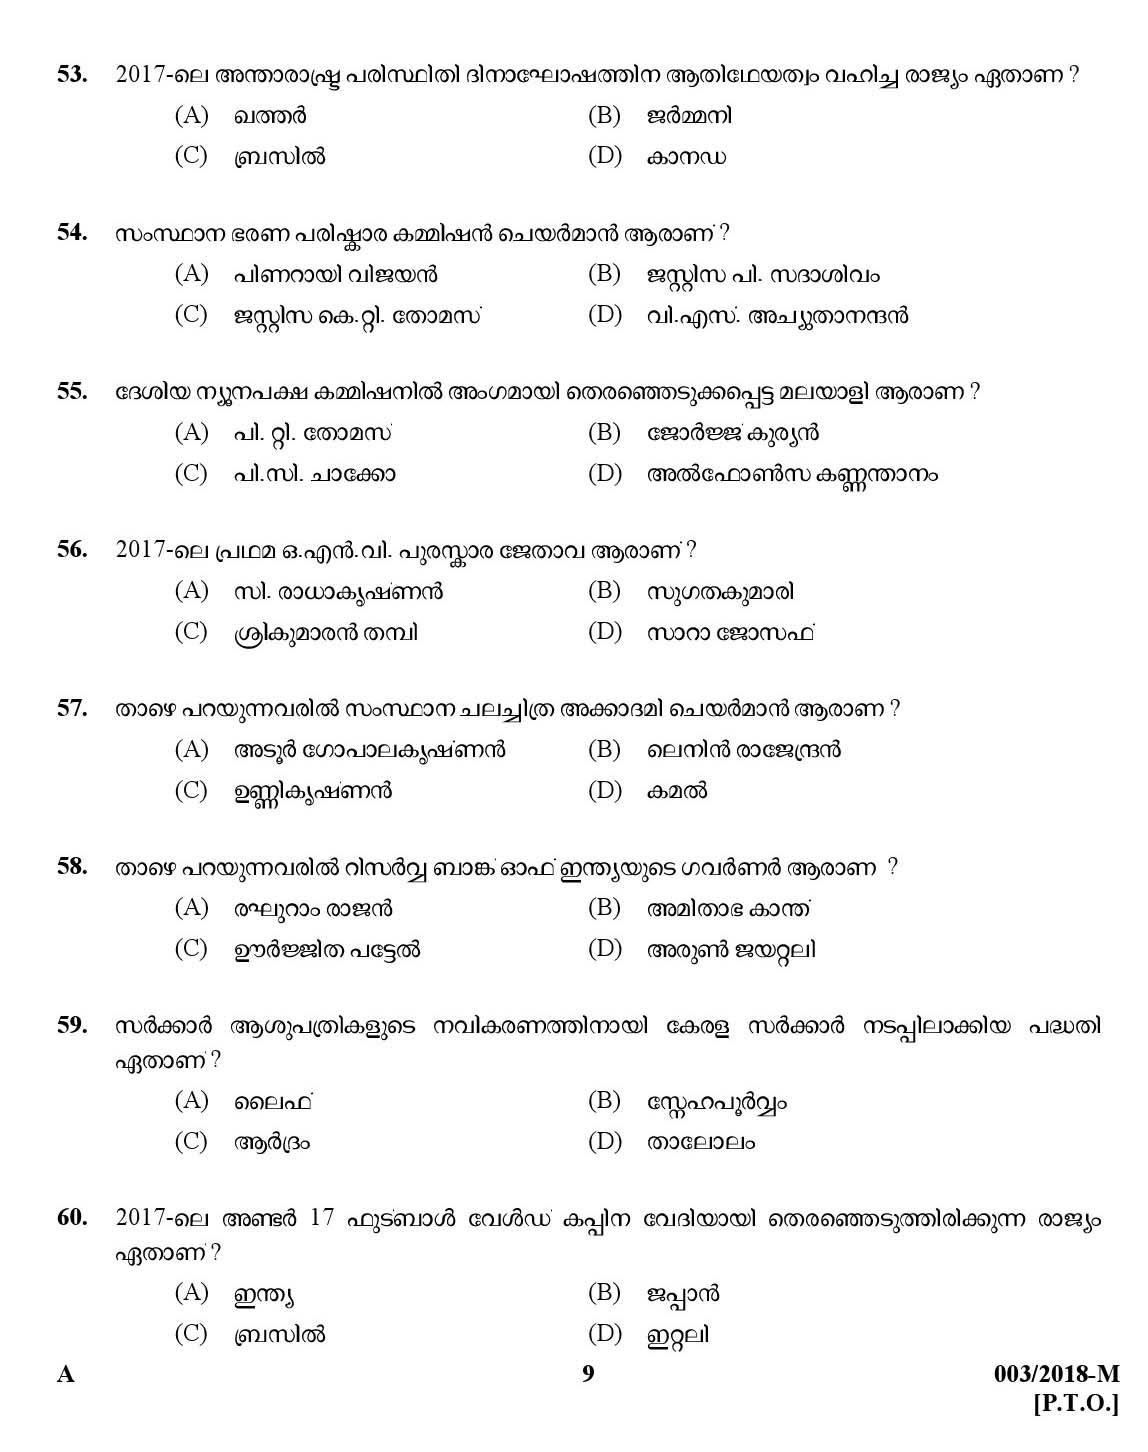 Kerala Last Grade Servants Exam 2018 Question Paper Code 0032018 M 8